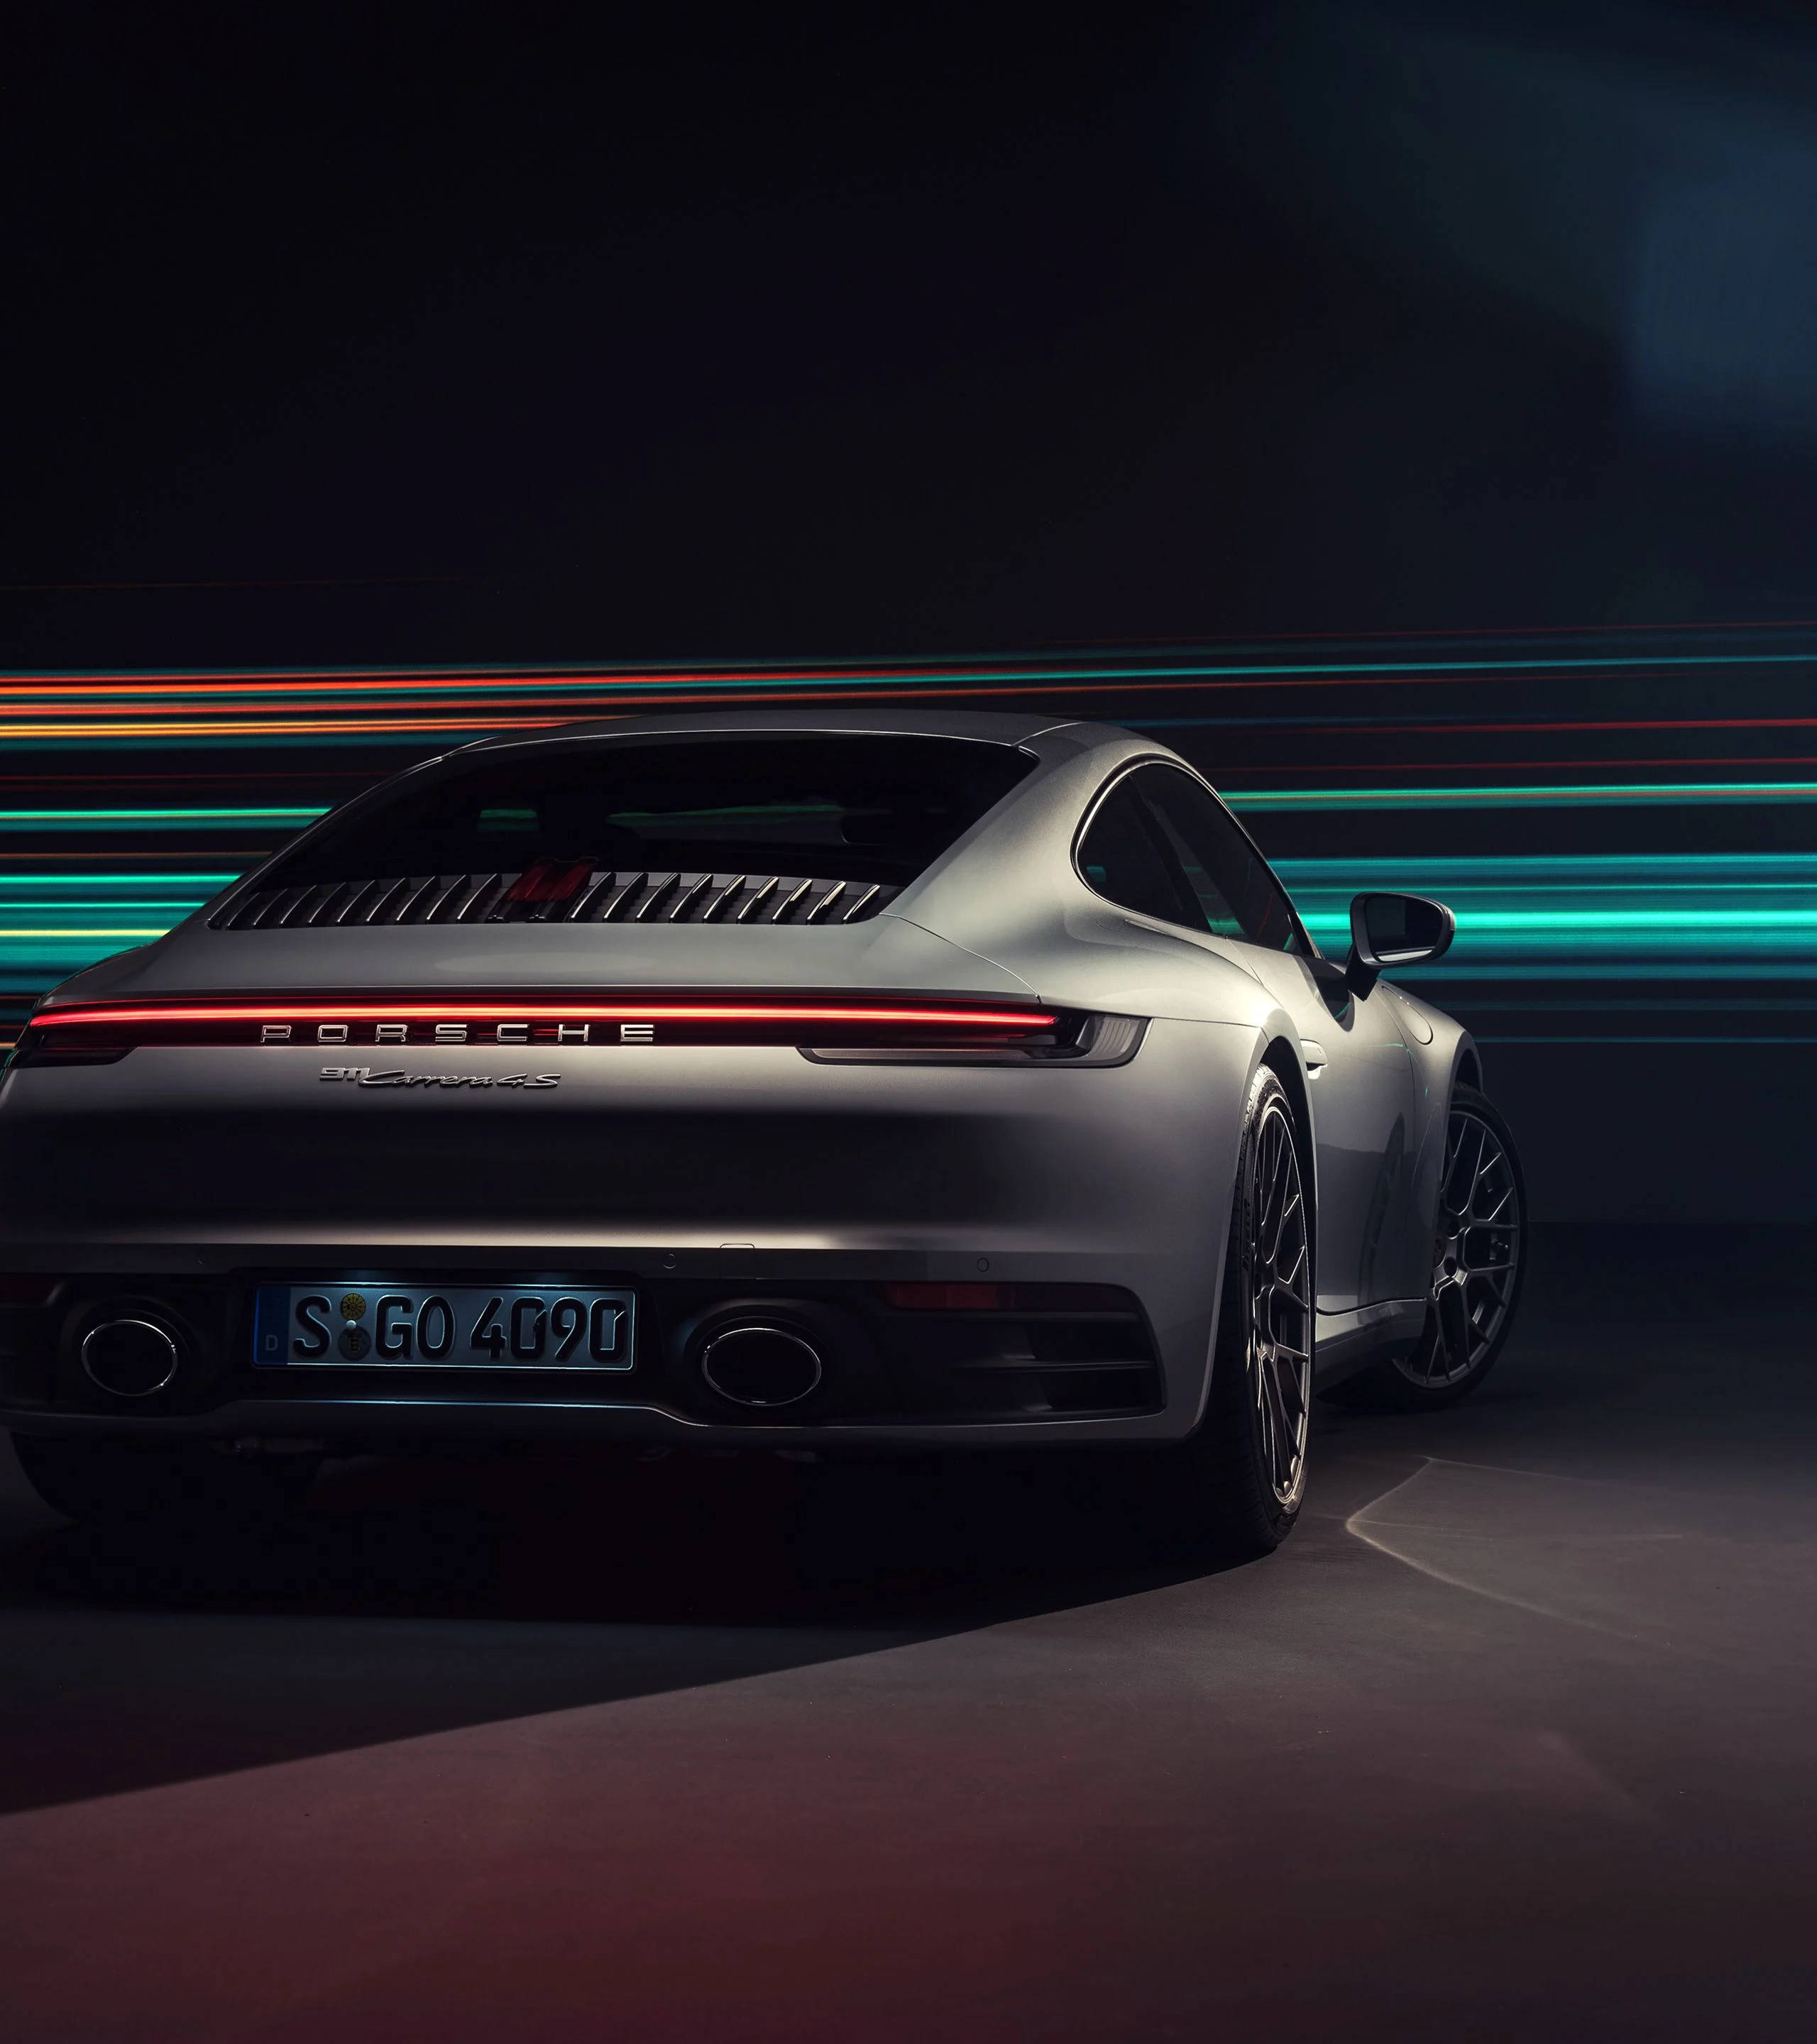 Hình nền đẹp chất lượng cao cho iPhone chủ đề xe Porsche 911